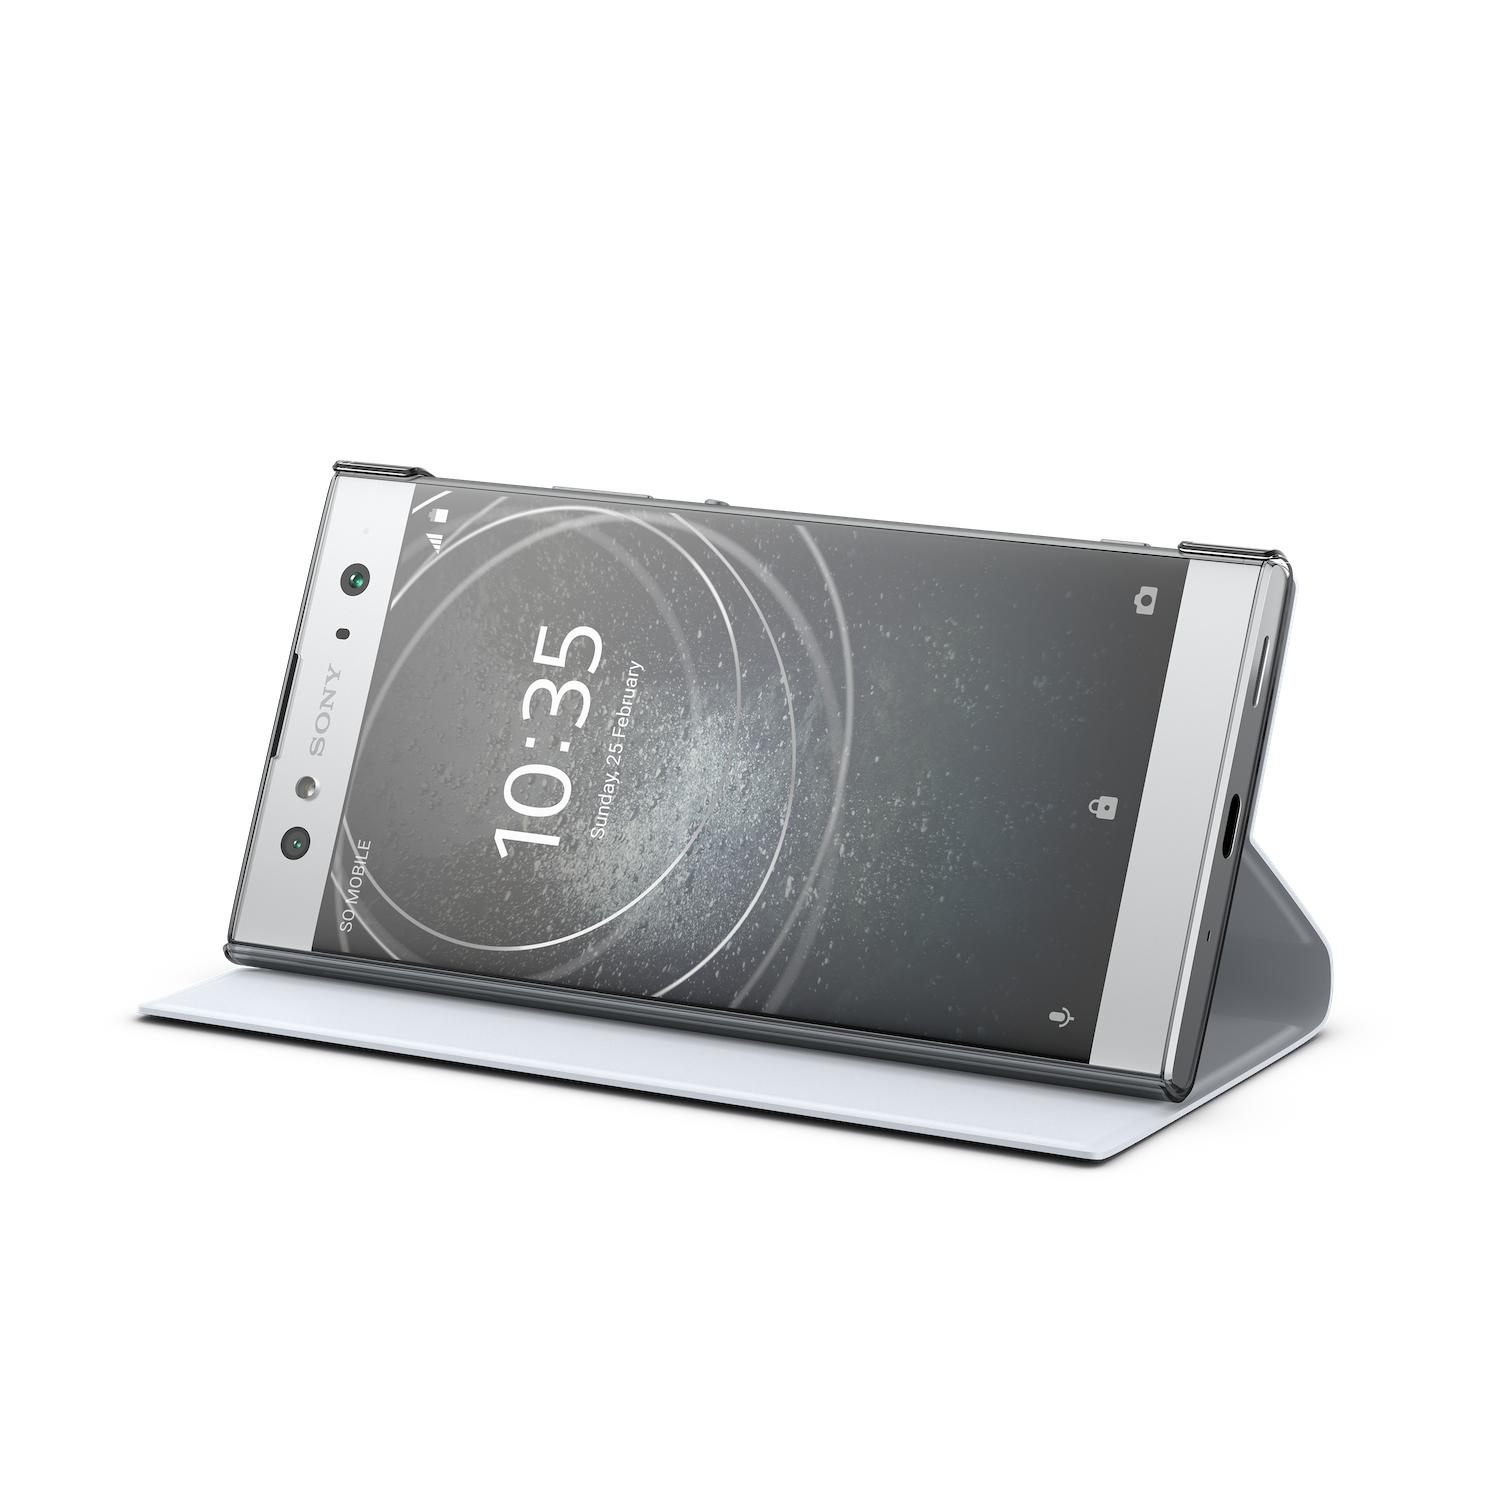 Sony Xperia XA2 Ultra, который является большим экраном и двойной камерой для селфи